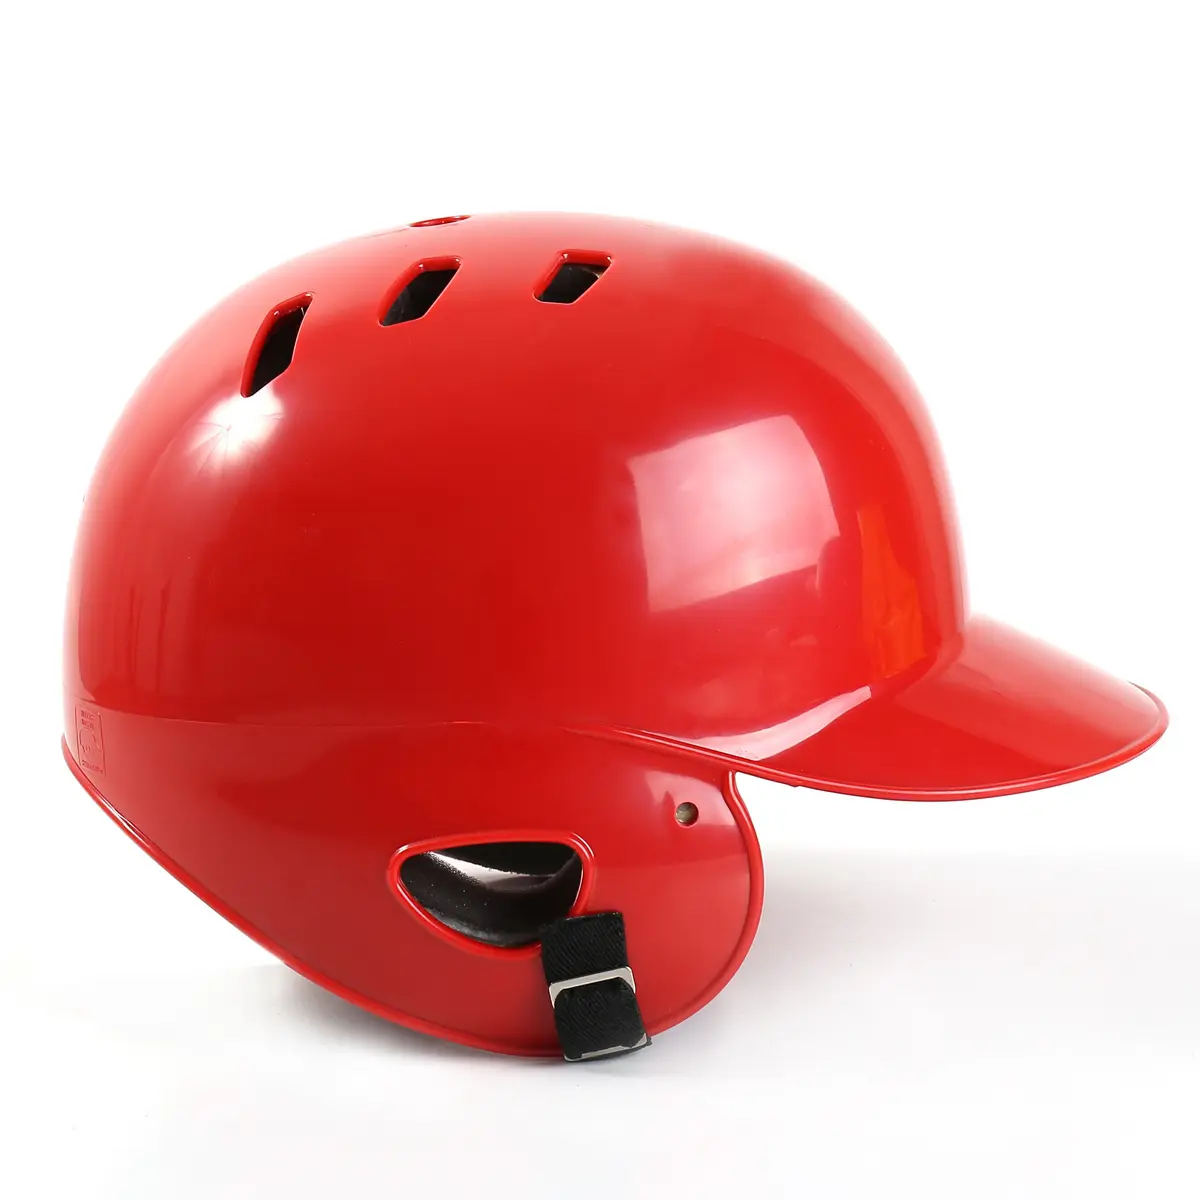 Бейсбольный шлем Batting Helmet бинауральный бейсбольный шлем с защитным экраном